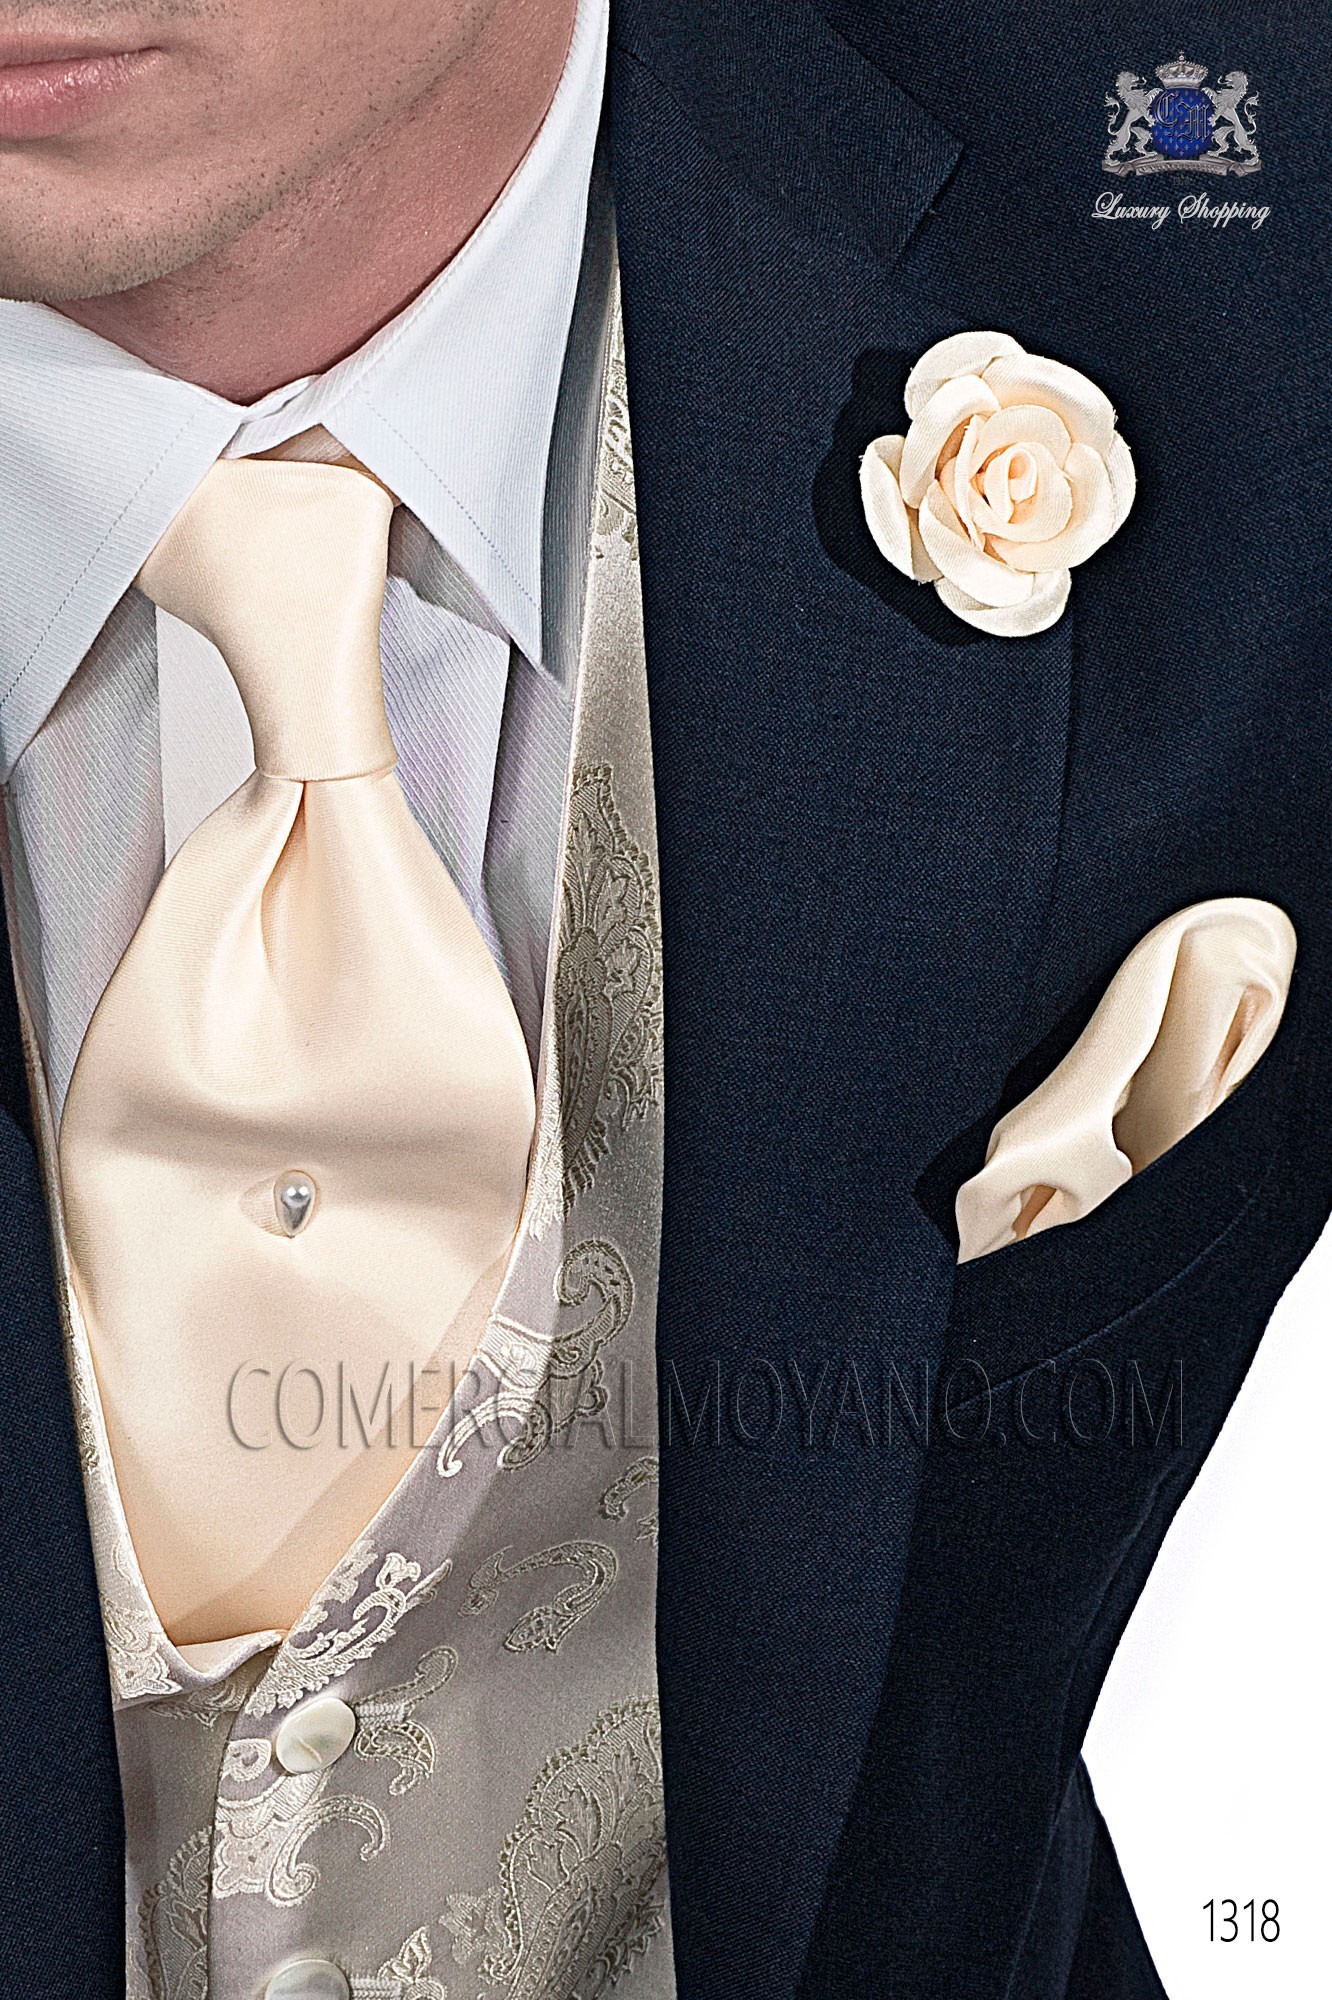 Italian gentleman blue men wedding suit, model: 1318 Mario Moyano Gentleman Collection